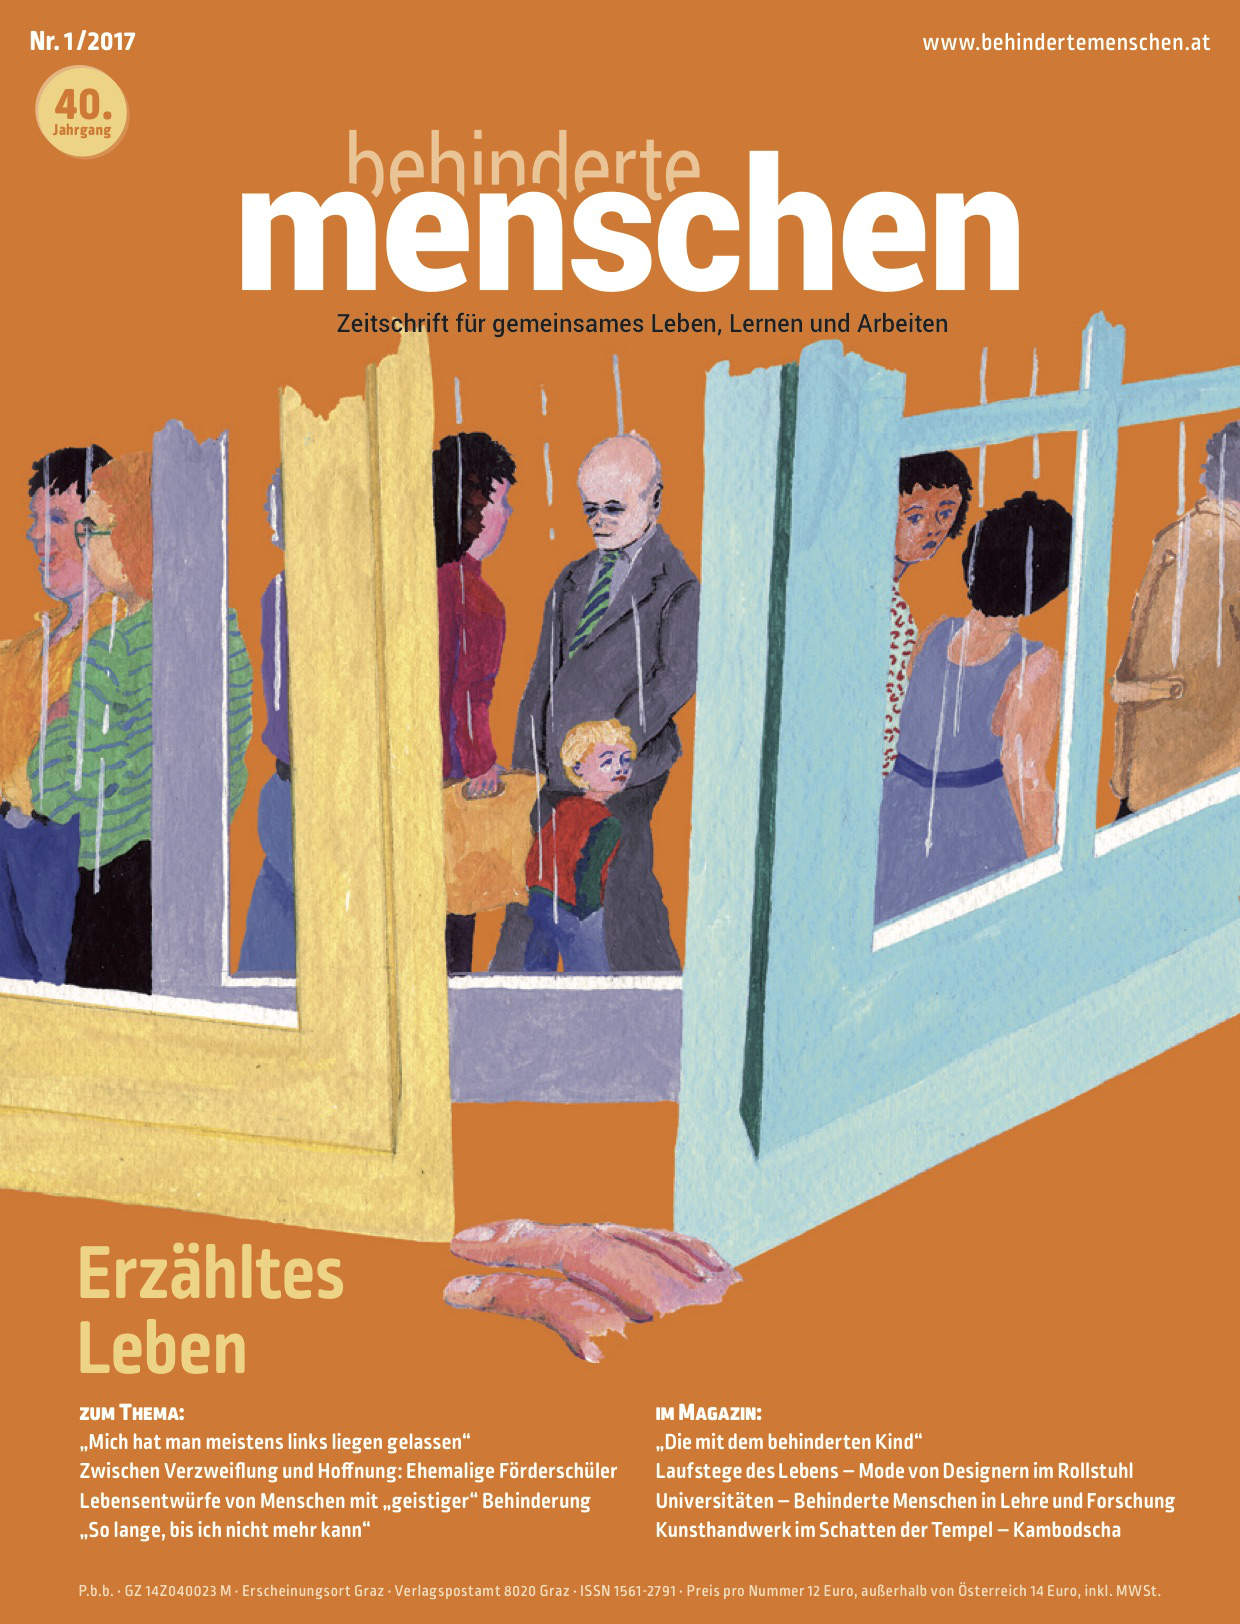 Titelbild der Zeitschrift BEHINDERTE MENSCHEN, Ausgabe 1/2017 "Erzähltes Leben"